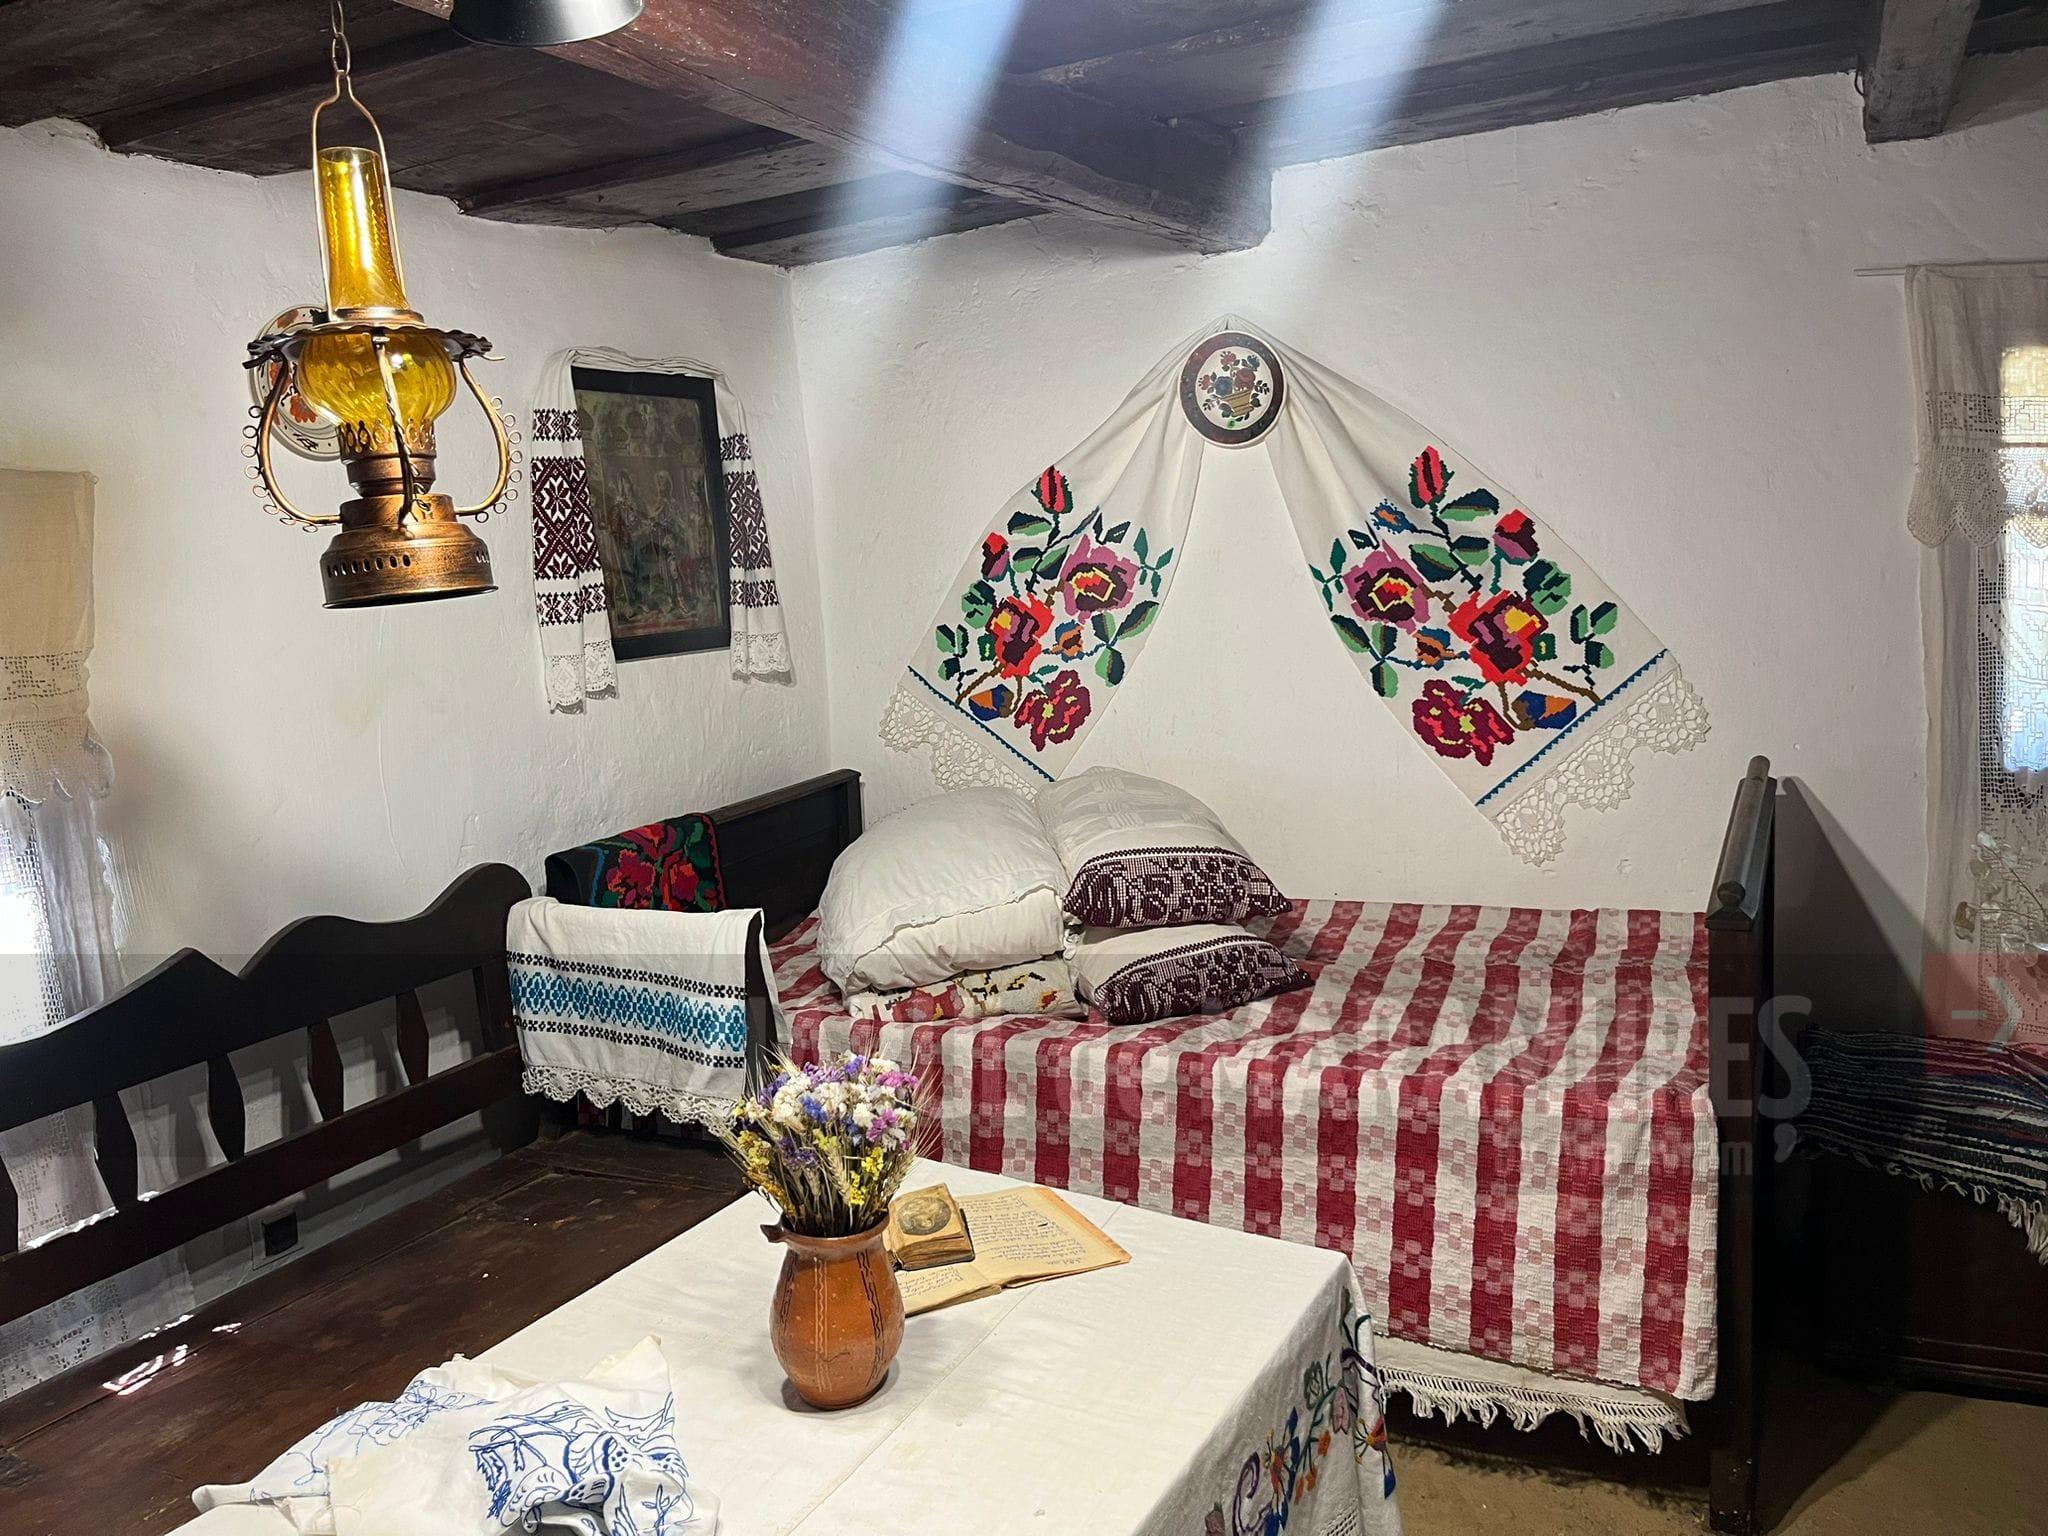 FOTO. Țesături, obiecte de uz casnic, respectiv mobilier din zona orașului Tăuții-Măgherăuș, în cadrul Muzeului ACASĂ